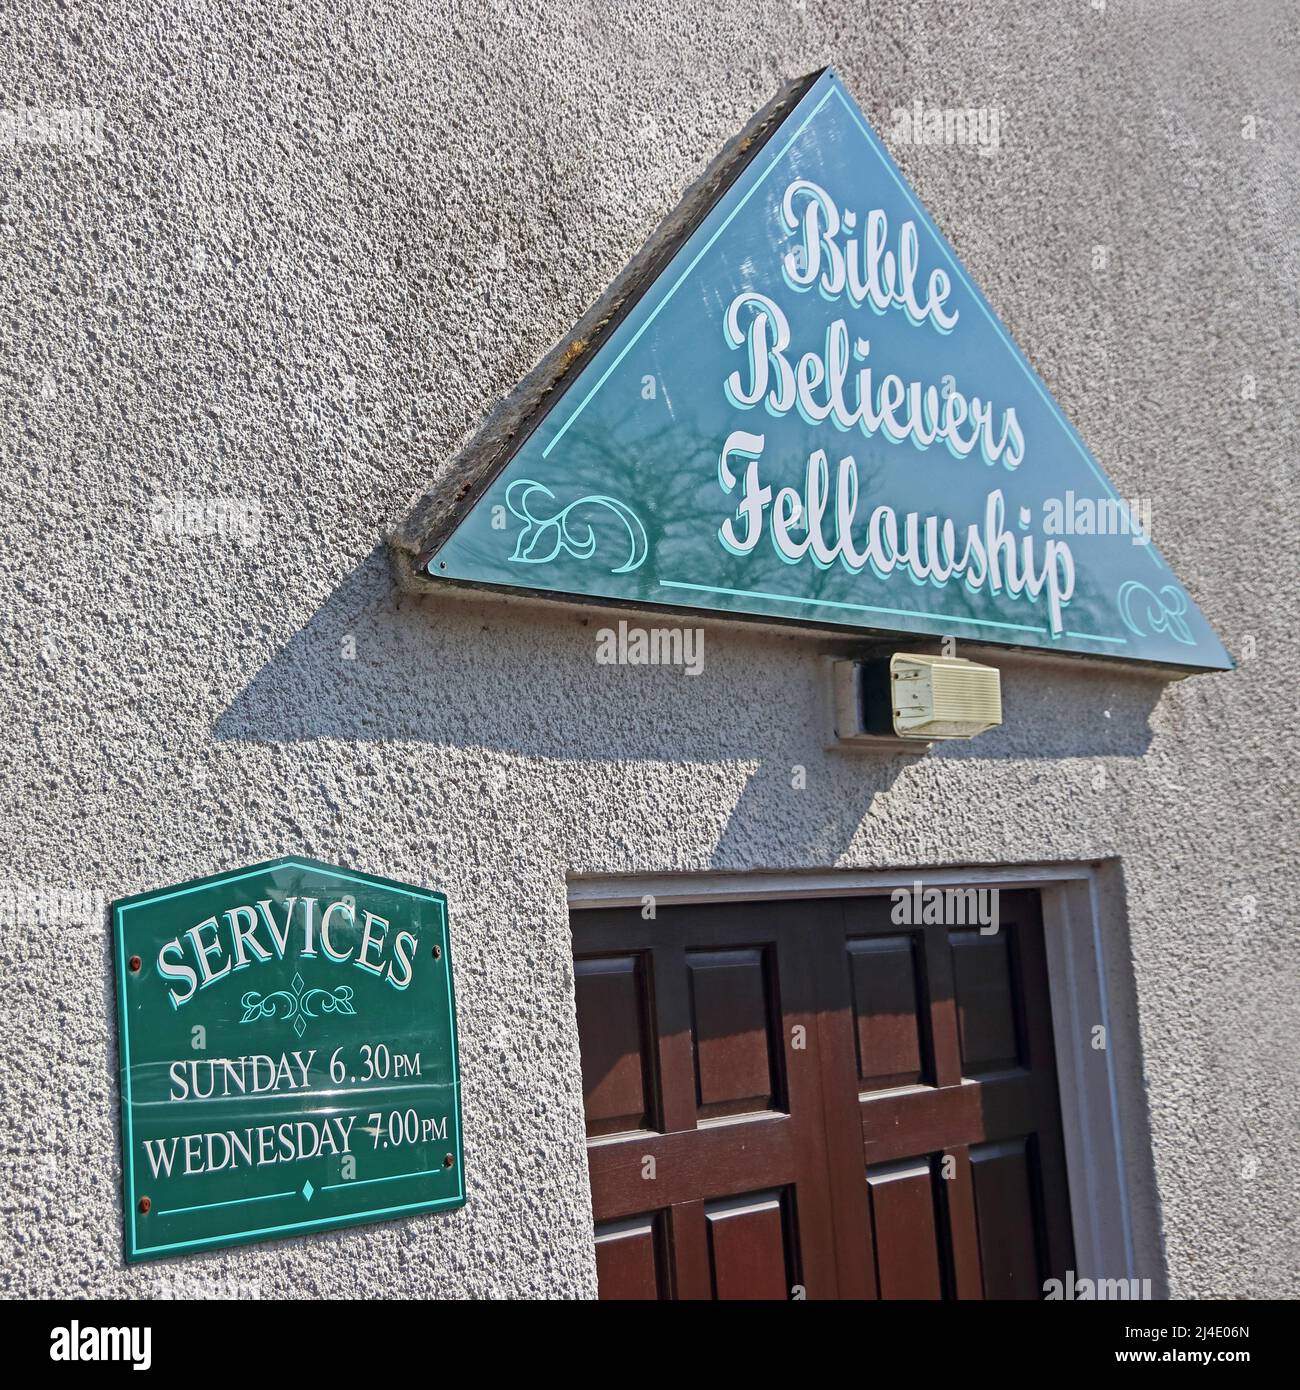 Bible Believers Fellowship signs over doorway, Pickering Stock Photo